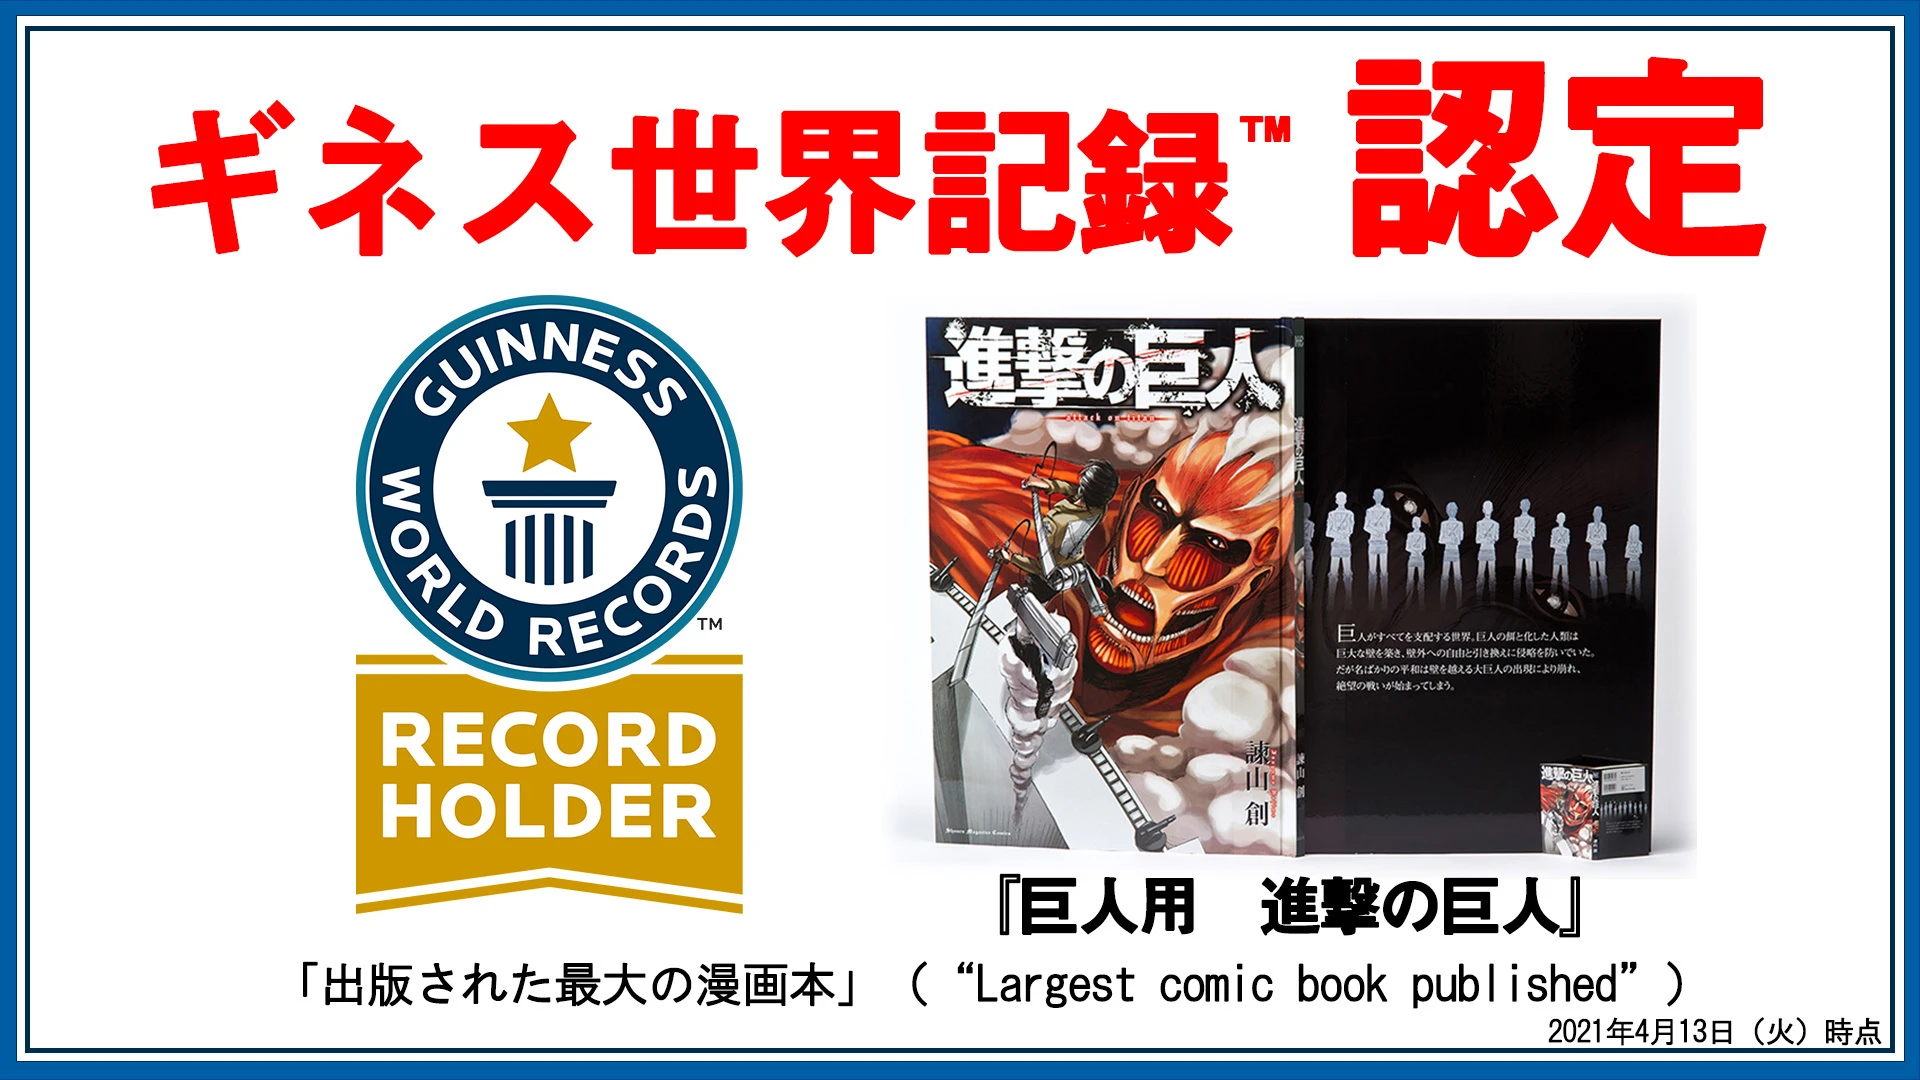 進撃の巨人』がギネス！ 超大型コミックスで「出版された最大の漫画本 